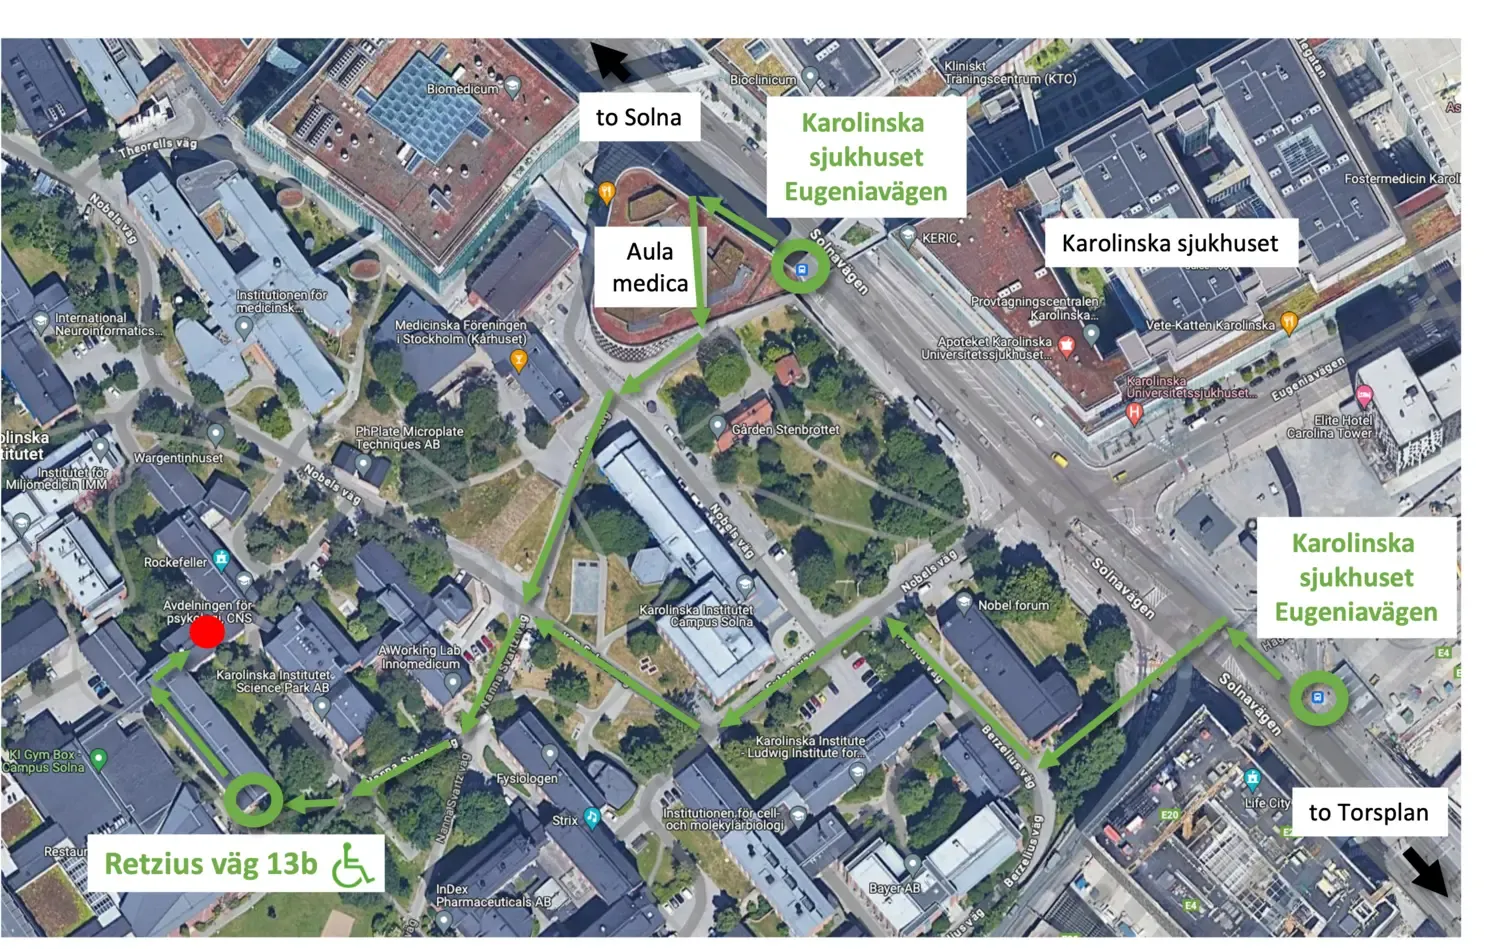 Flygbild över Campus Solna som visar vägen till NatMEGs laboratoriums ingång via Retzius väg 13.